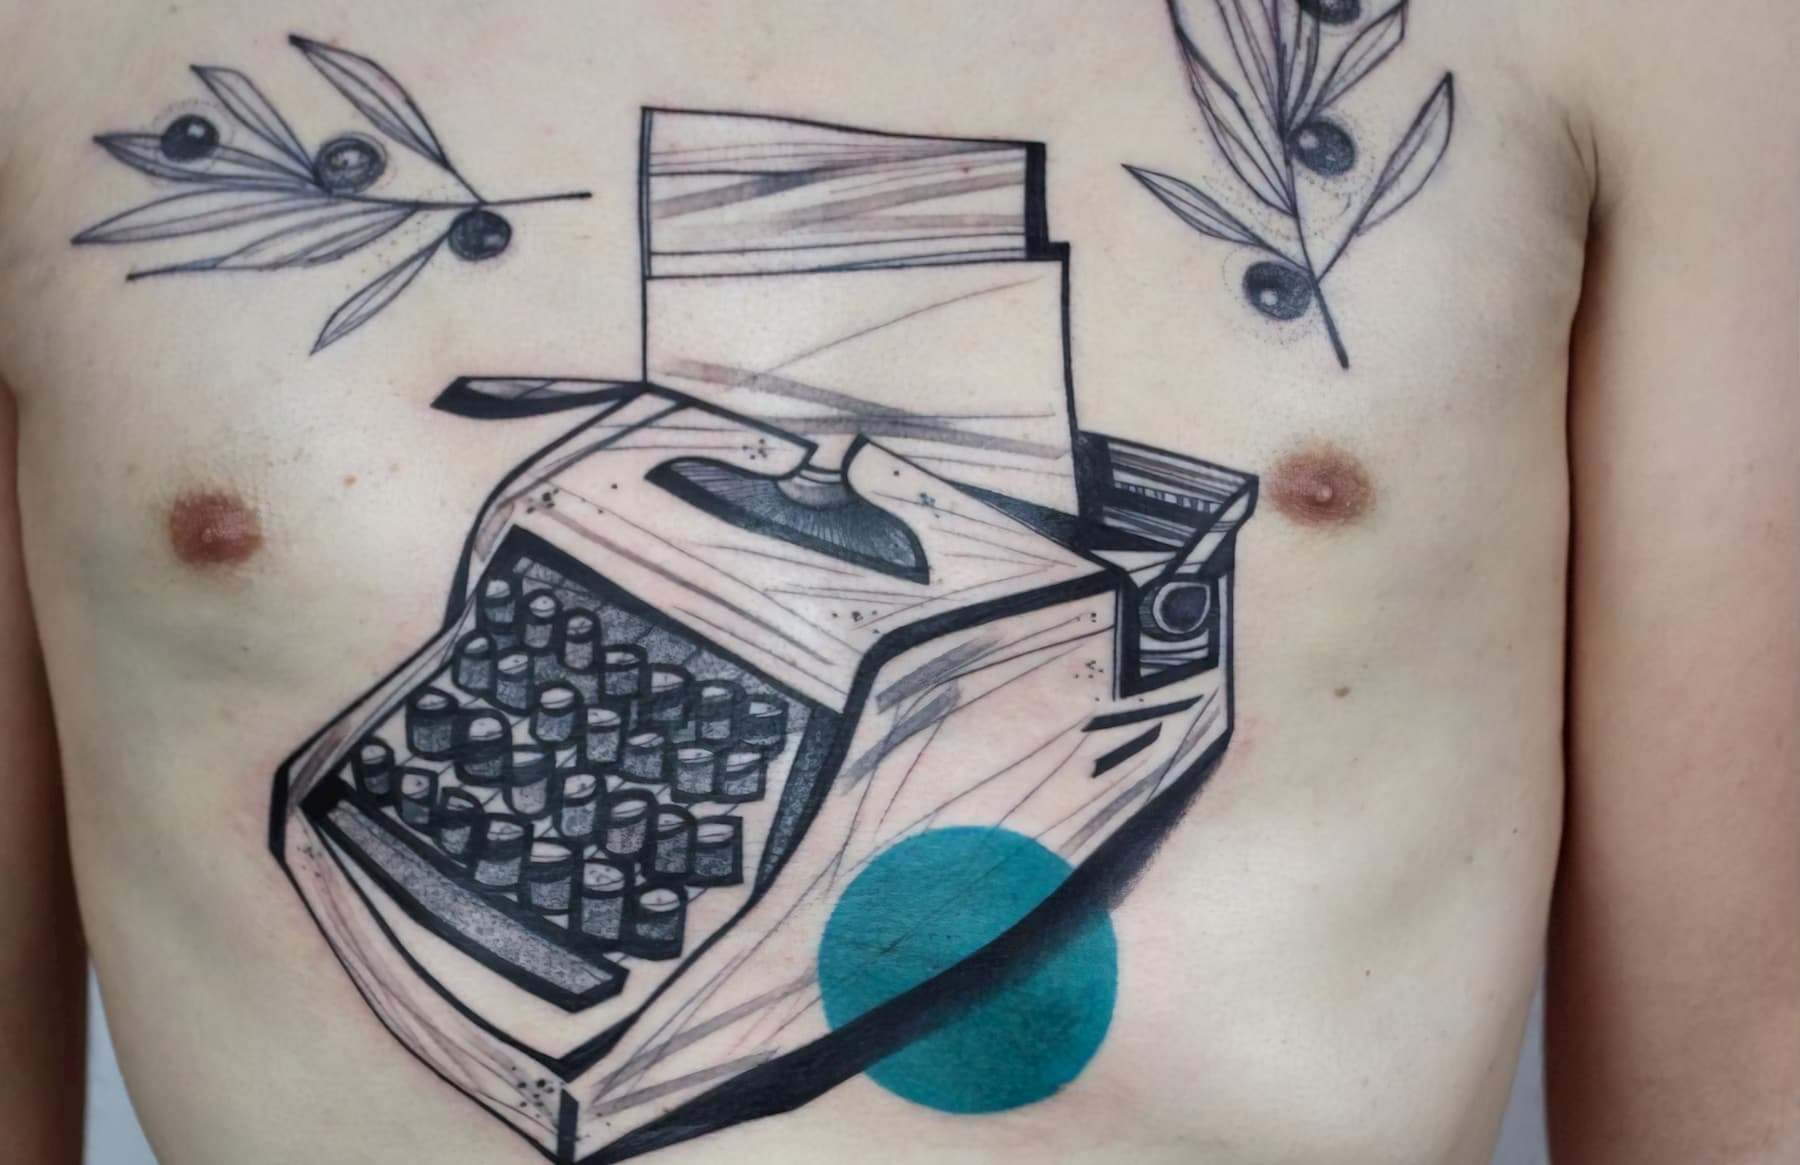 Иллюстративные татуировки: история, дизайны и художники